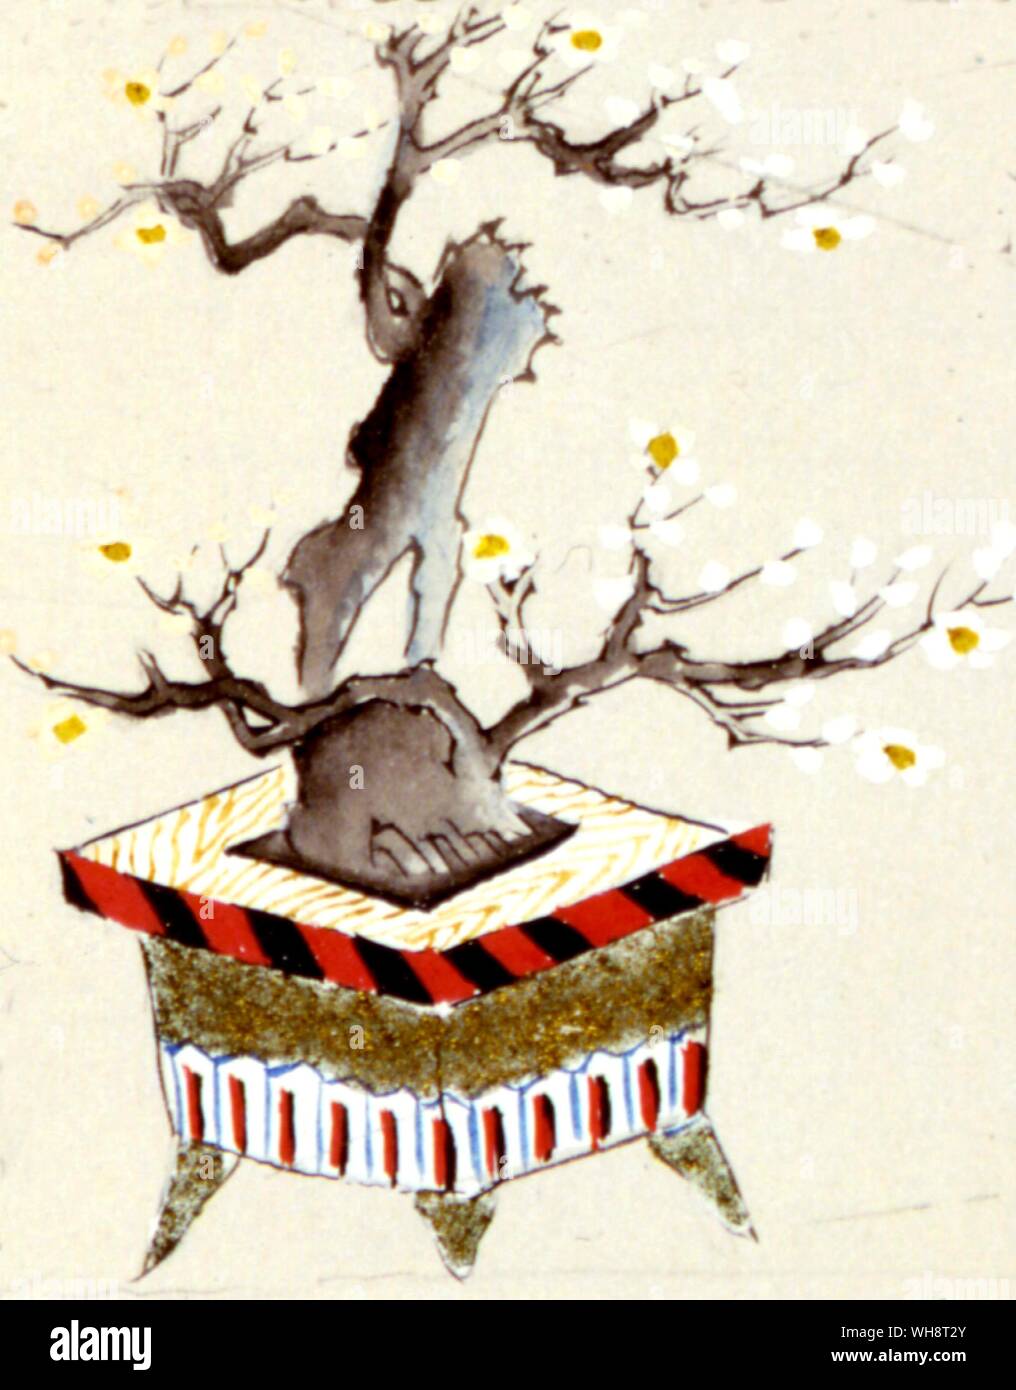 White Plum tree (Bonsai?). Stockfoto